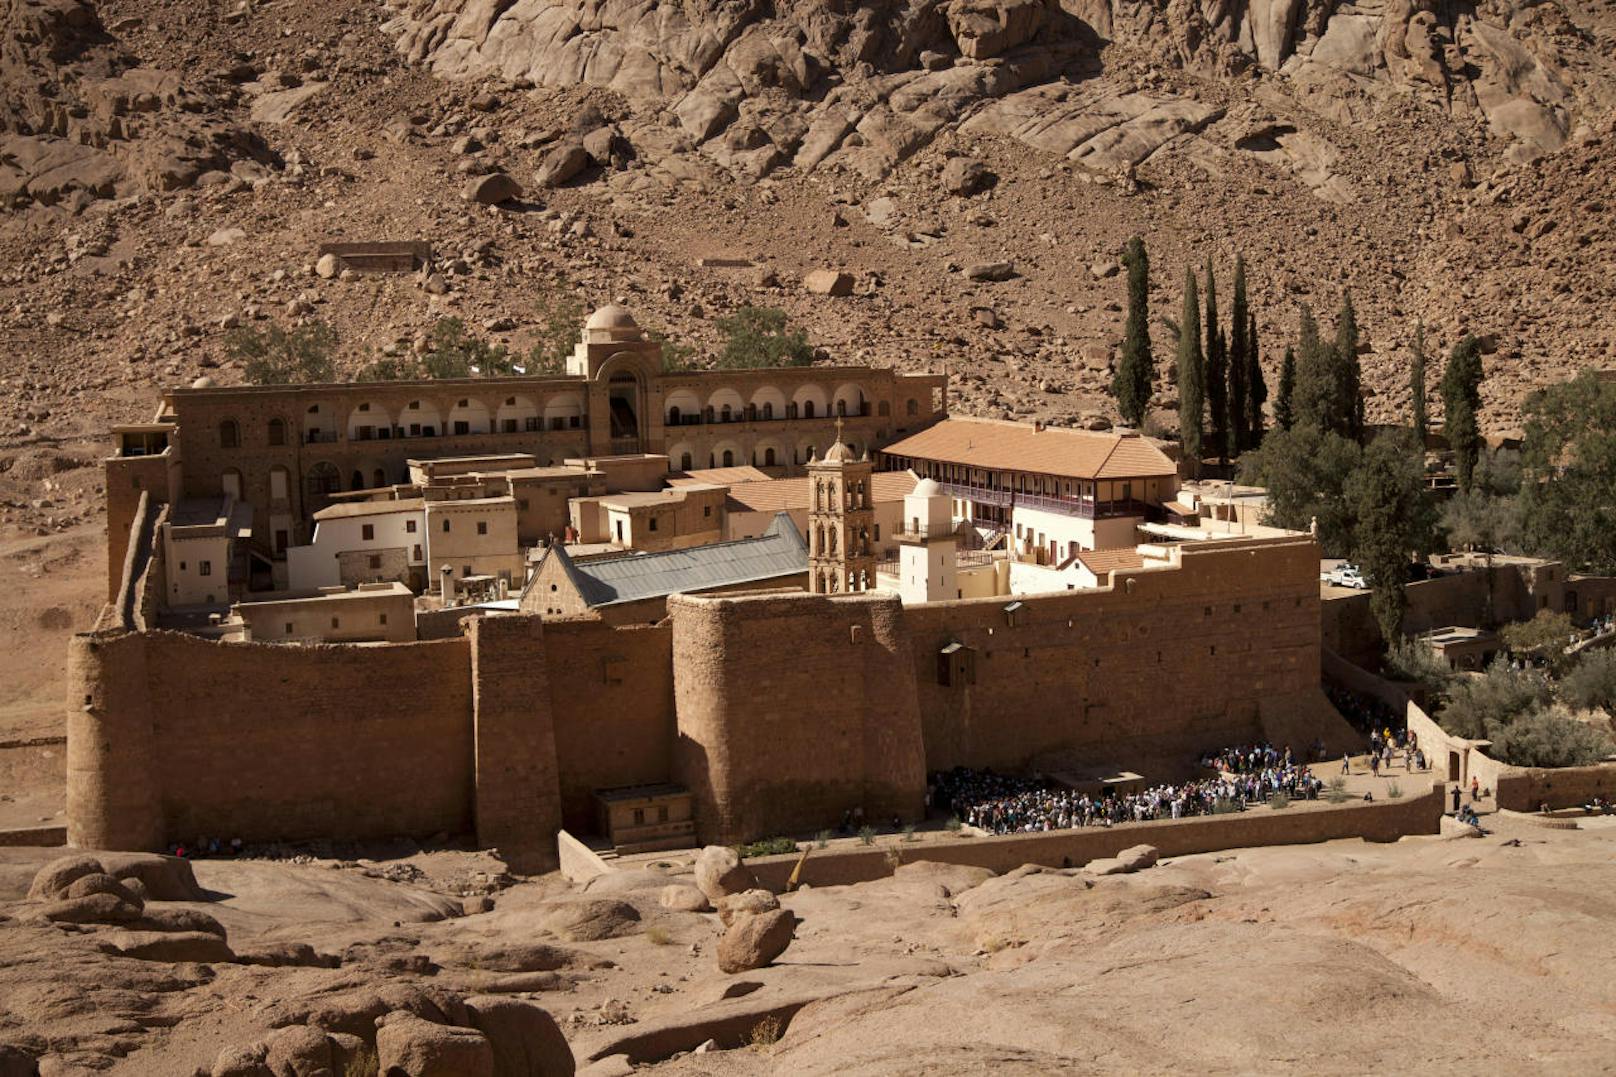 Auf der Sinai-Halbinsel in Ägypten auf dem Berg Sinai soll Moses einst die zehn Gebote empfangen haben. Diese Region ist für Christen, Juden und Muslime gleichermaßen bedeutsam.